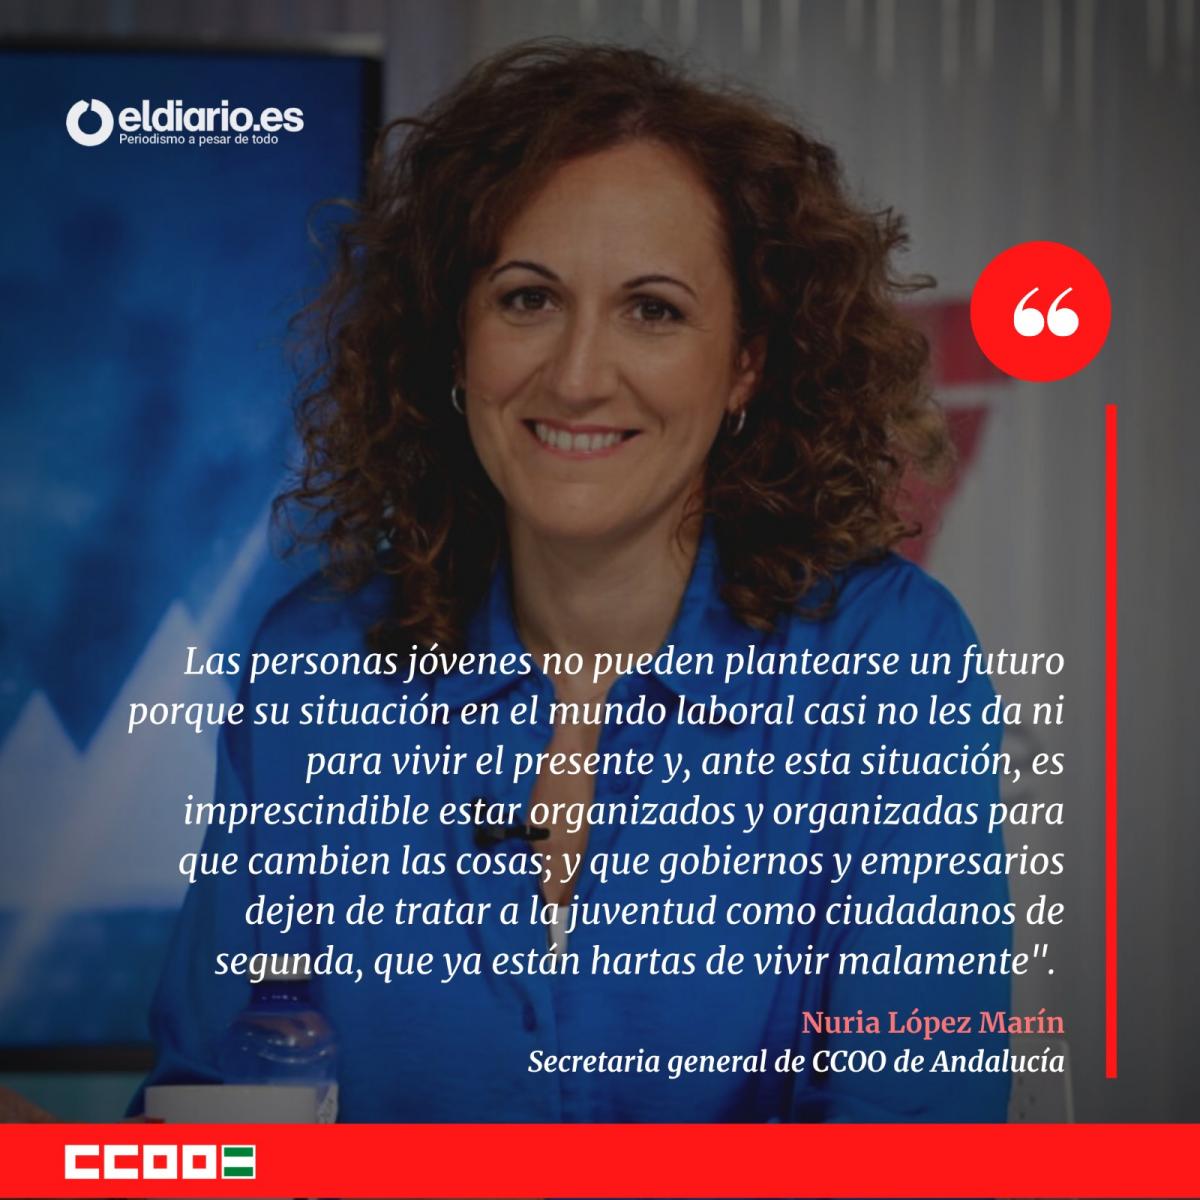 Nuria López Marín, secretaria general de CCOO de Andalucía en el diario.es